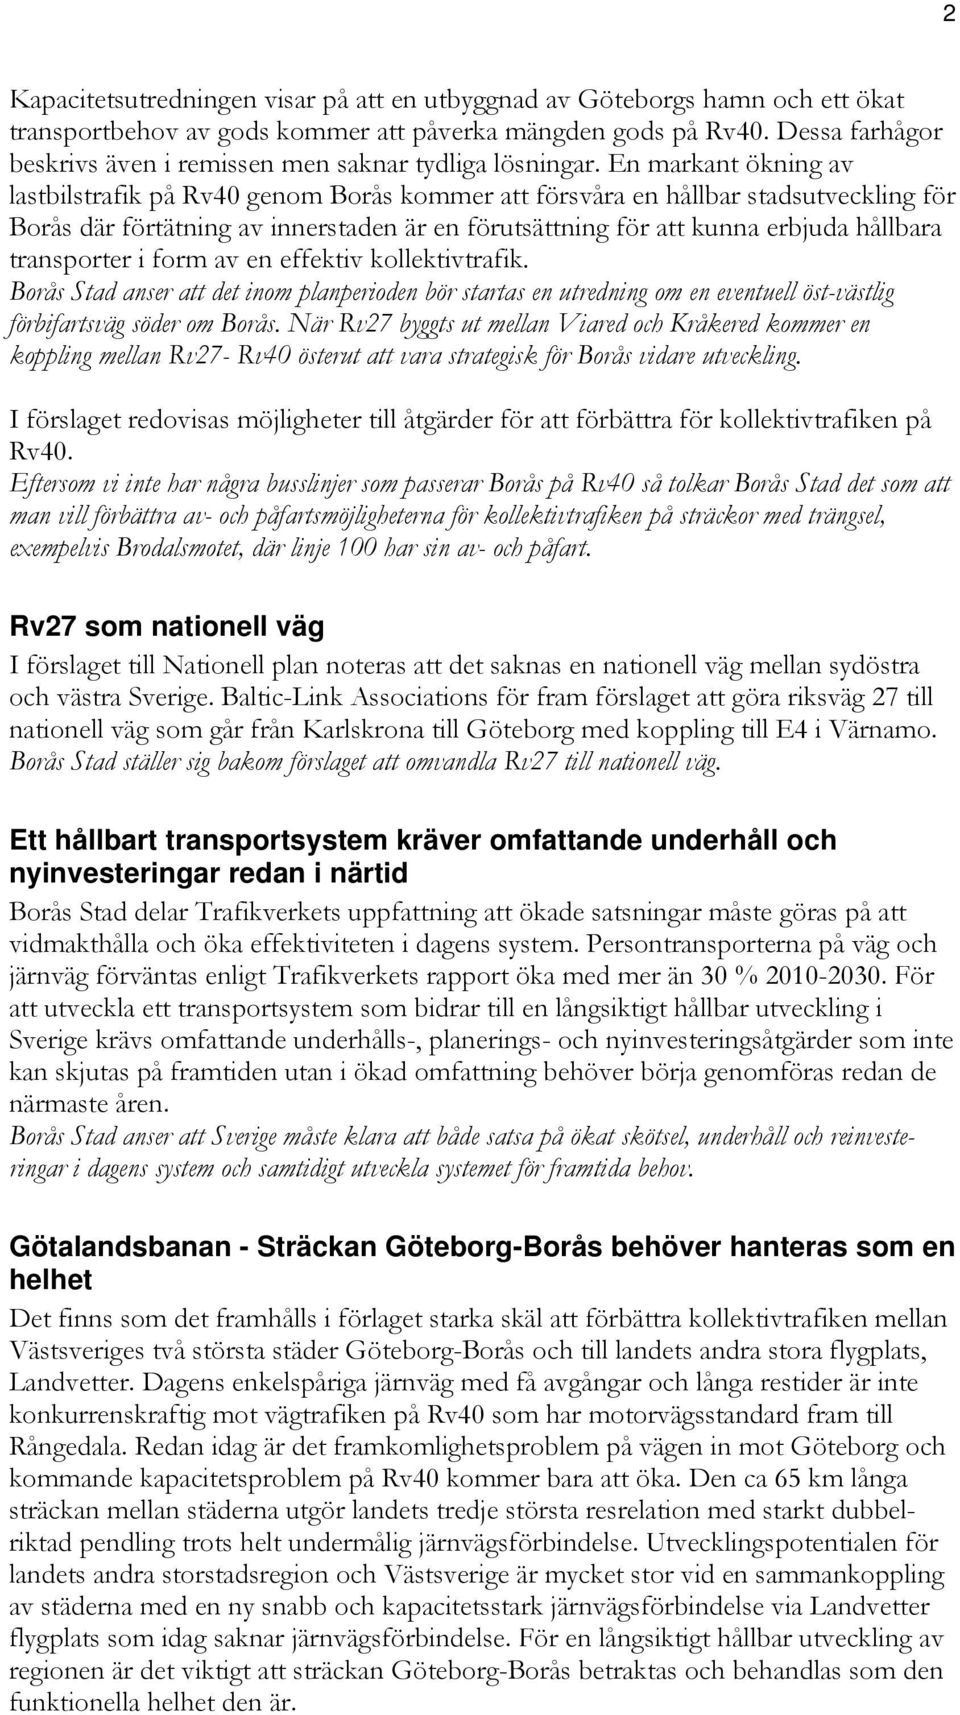 En markant ökning av lastbilstrafik på Rv40 genom Borås kommer att försvåra en hållbar stadsutveckling för Borås där förtätning av innerstaden är en förutsättning för att kunna erbjuda hållbara